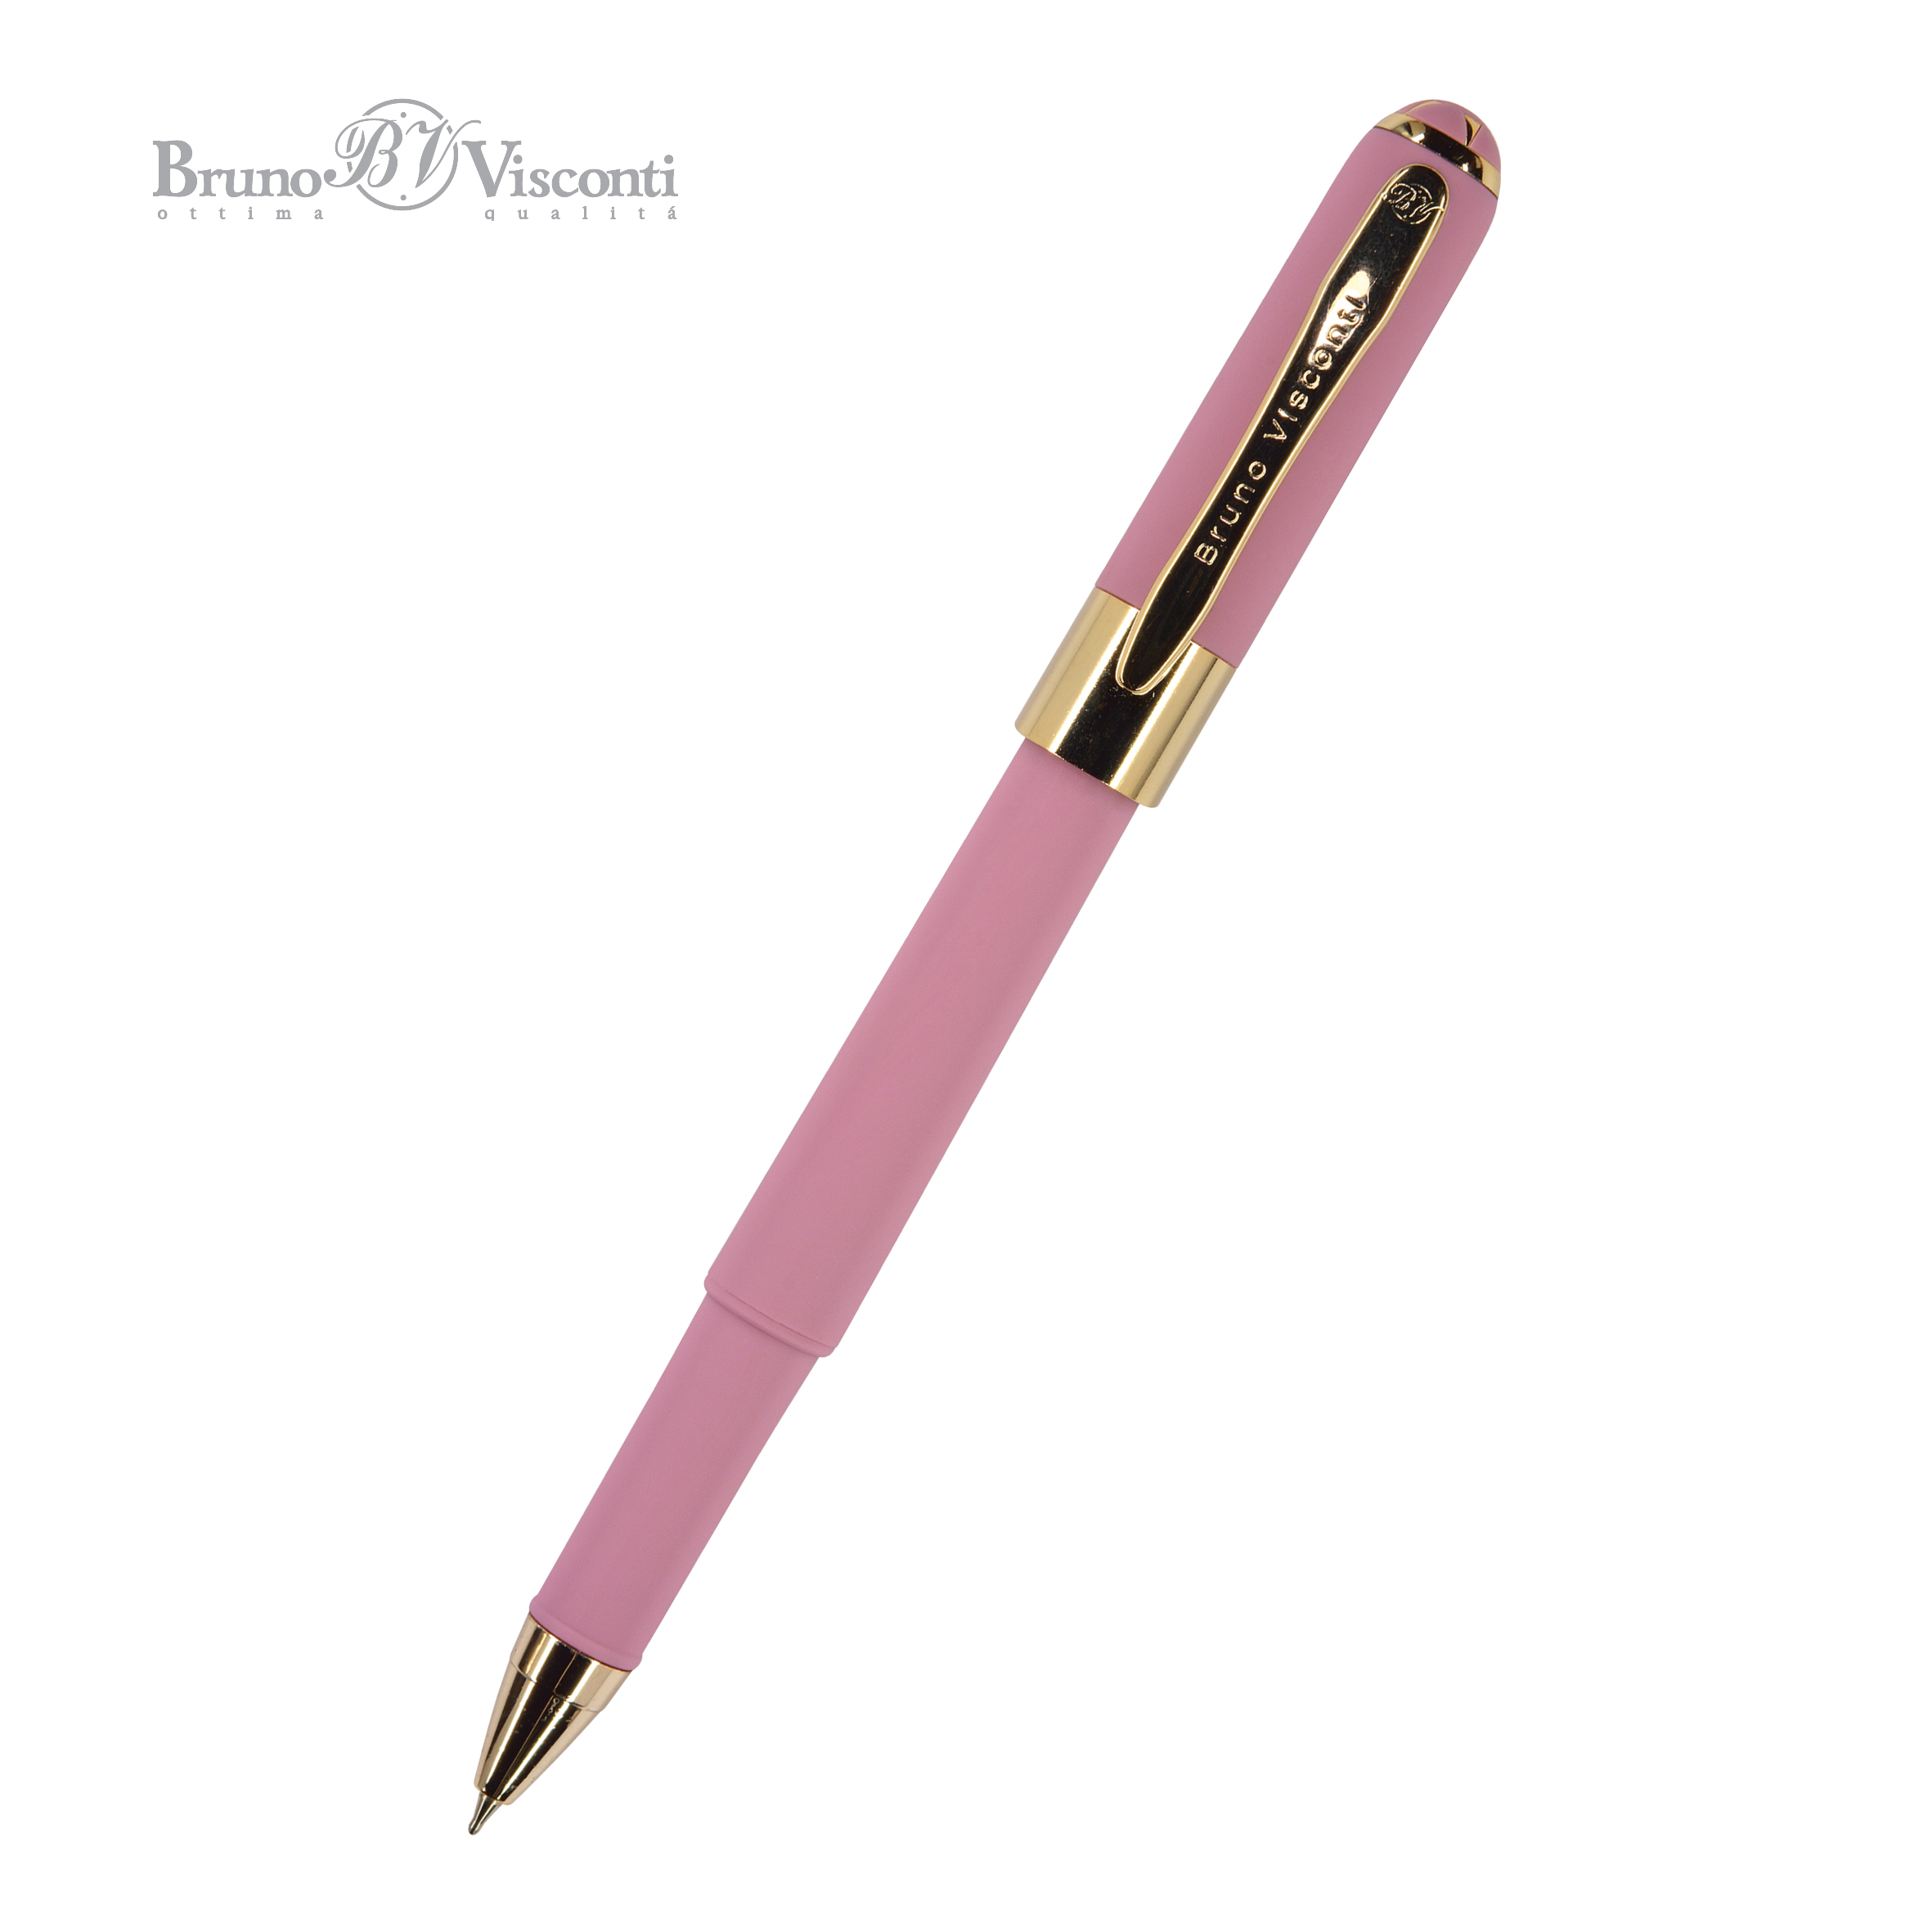 Ручка подар шар BV Monaco синяя 0,5мм розовый корпус